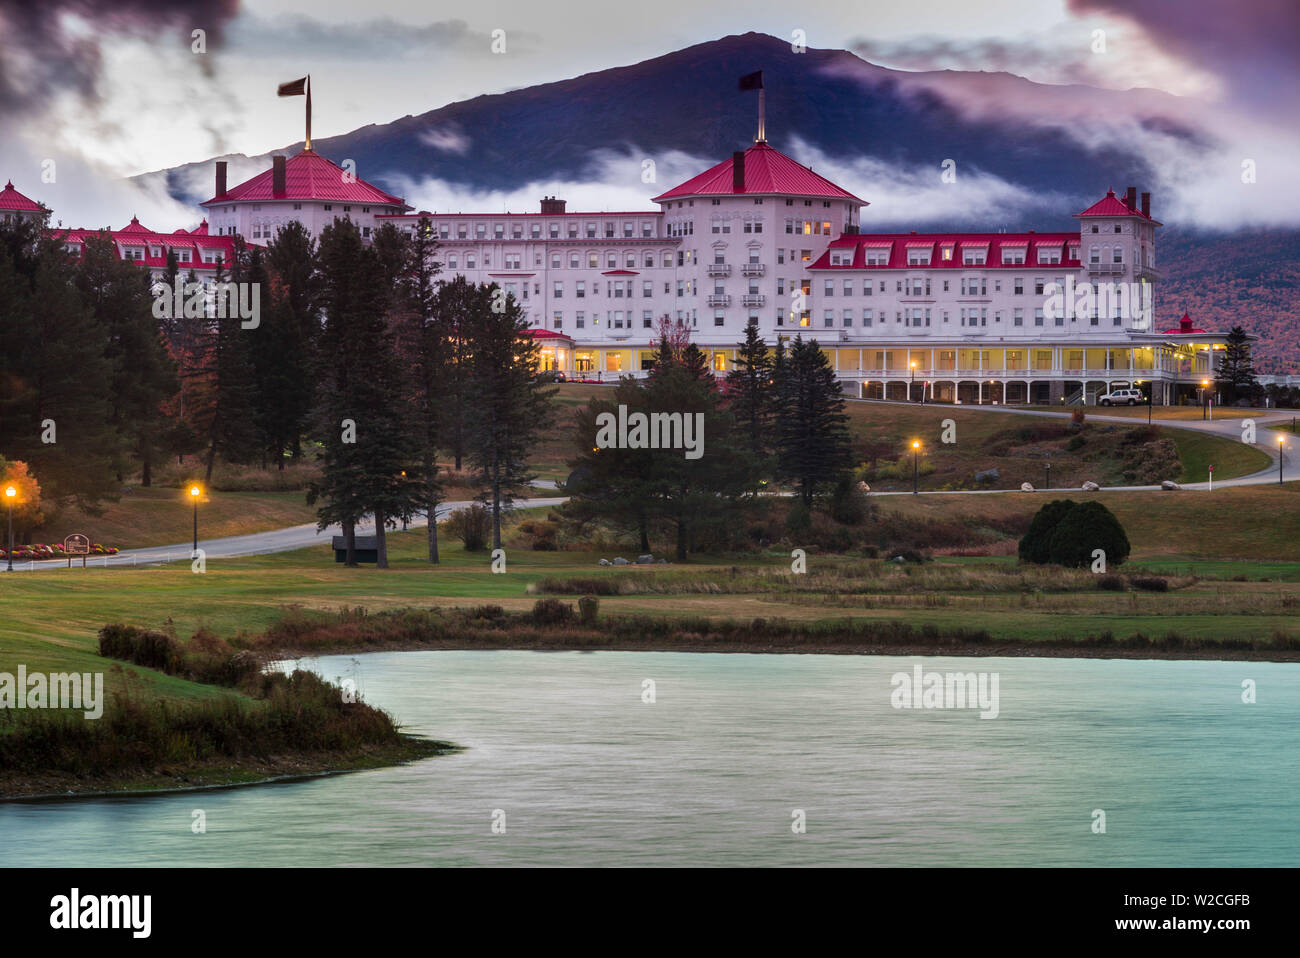 USA, New Hampshire, White Mountains, Bretton Woods, The Mount Washington Hotel, exterior, dawn Stock Photo